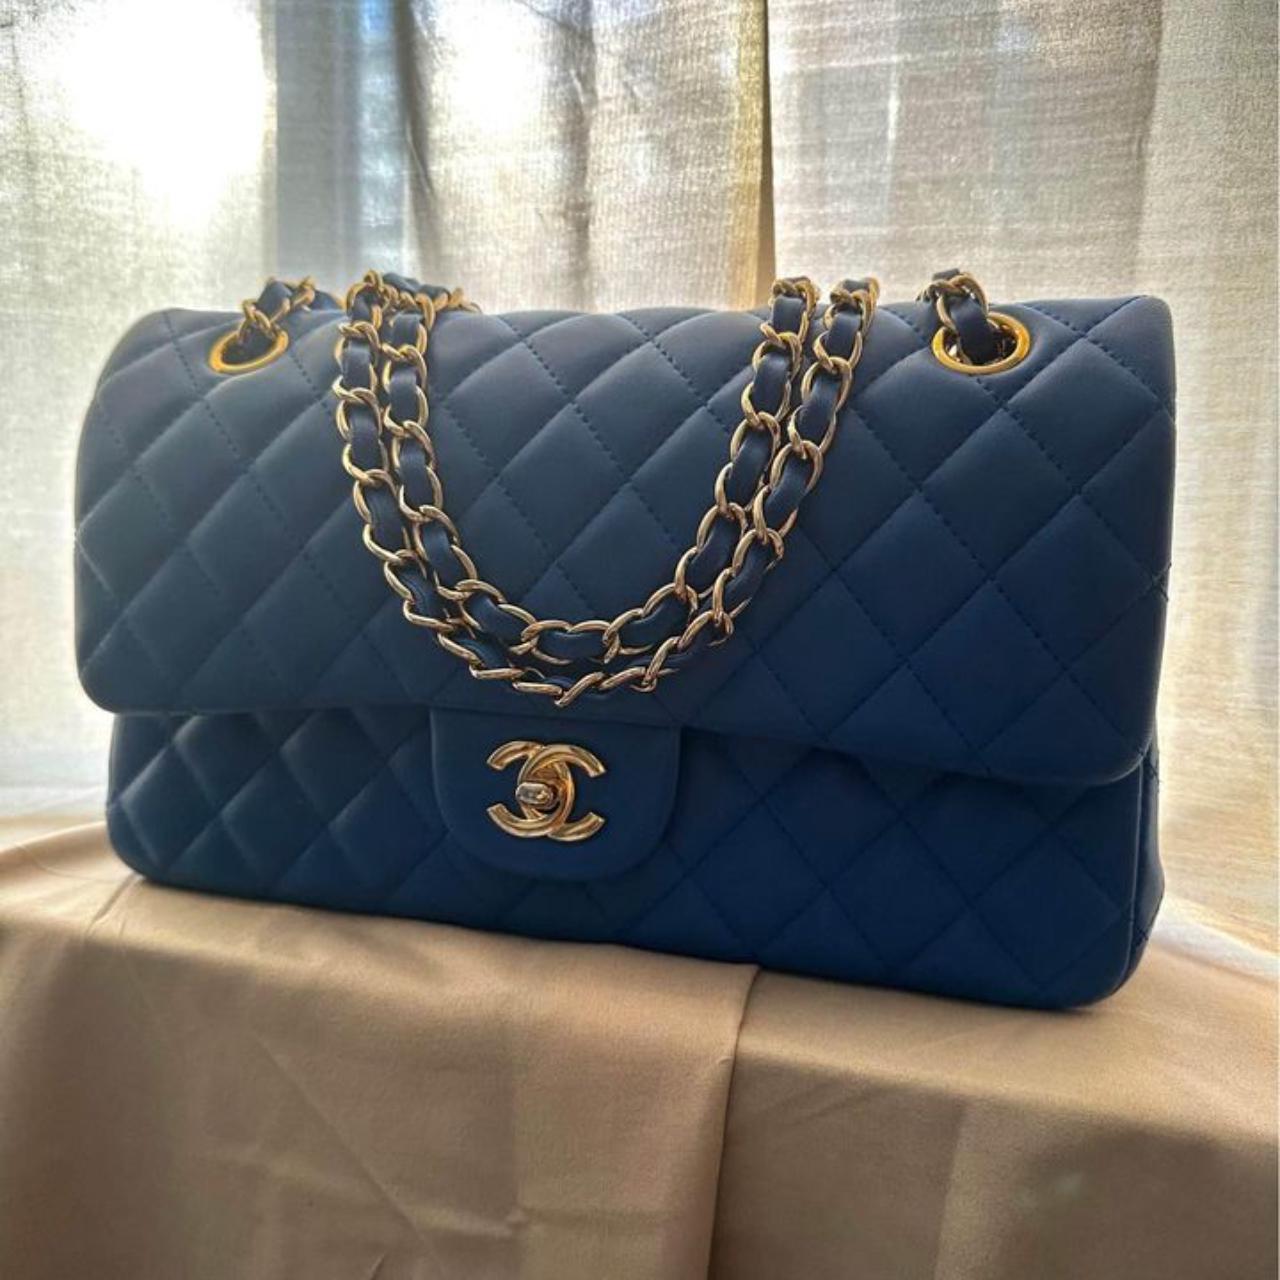 Chanel Blue Medium Shoulder Bag Condition : Used -... - Depop